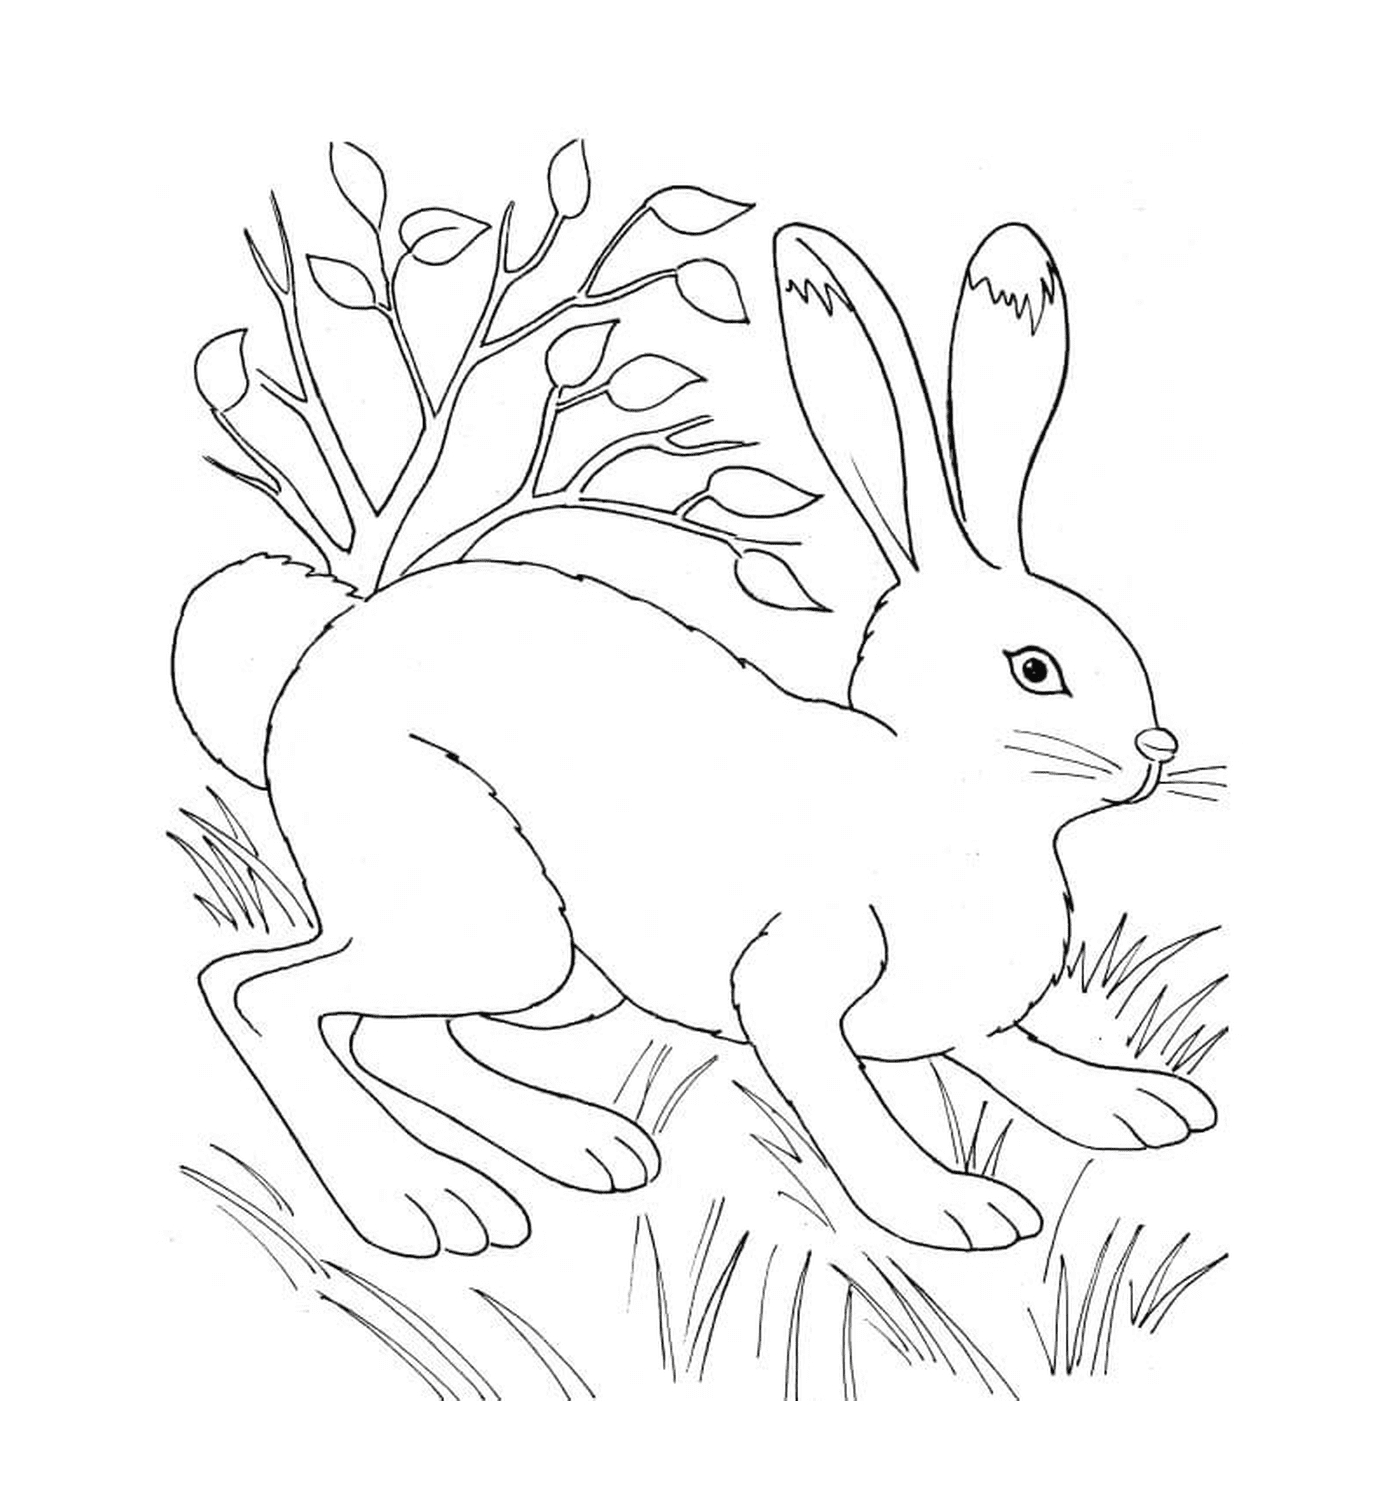  Kaninchen in der Natur in der Nähe von Vegetation 